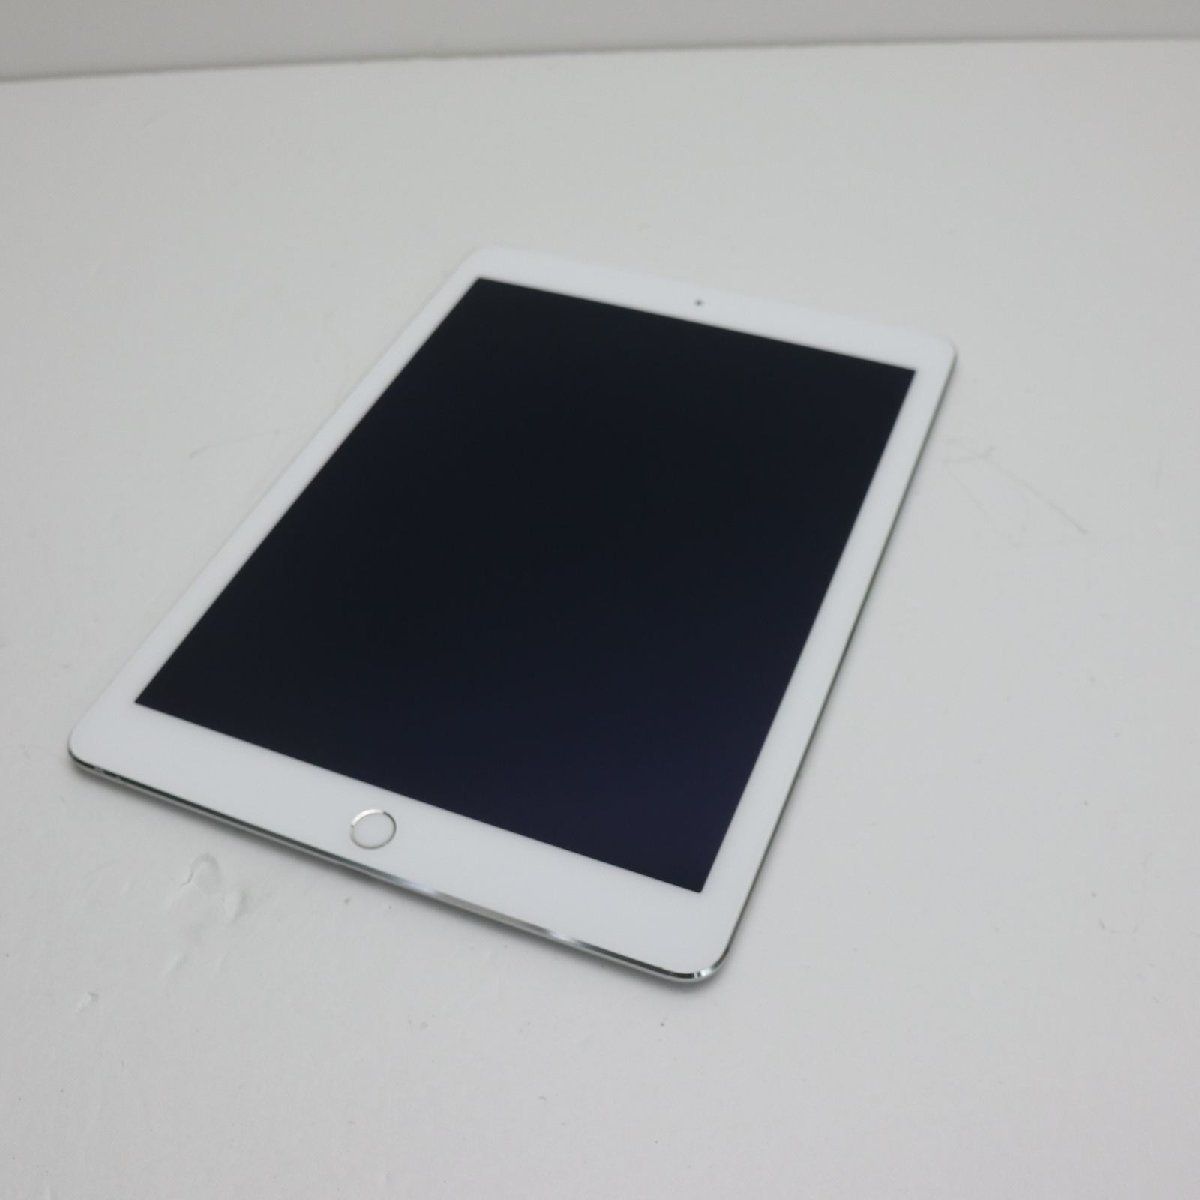 超美品 au iPad Air 2 Cellular 32GB シルバー 即日発送 タブレット